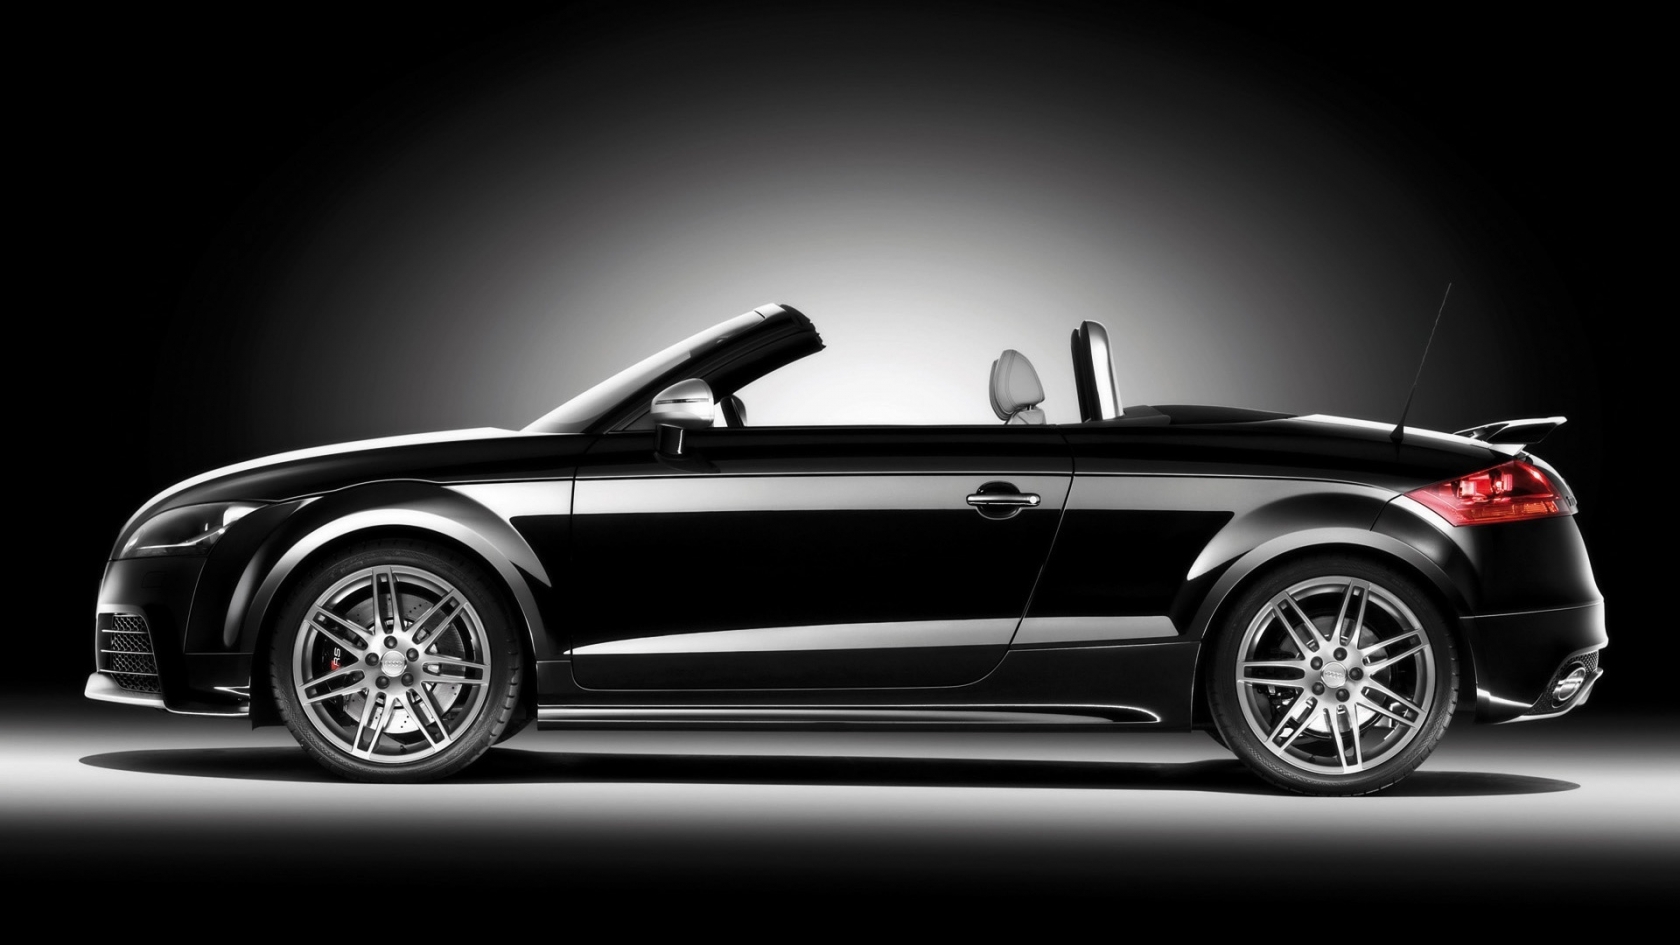 2009 Audi TT RS Roadster Black Side for 1680 x 945 HDTV resolution